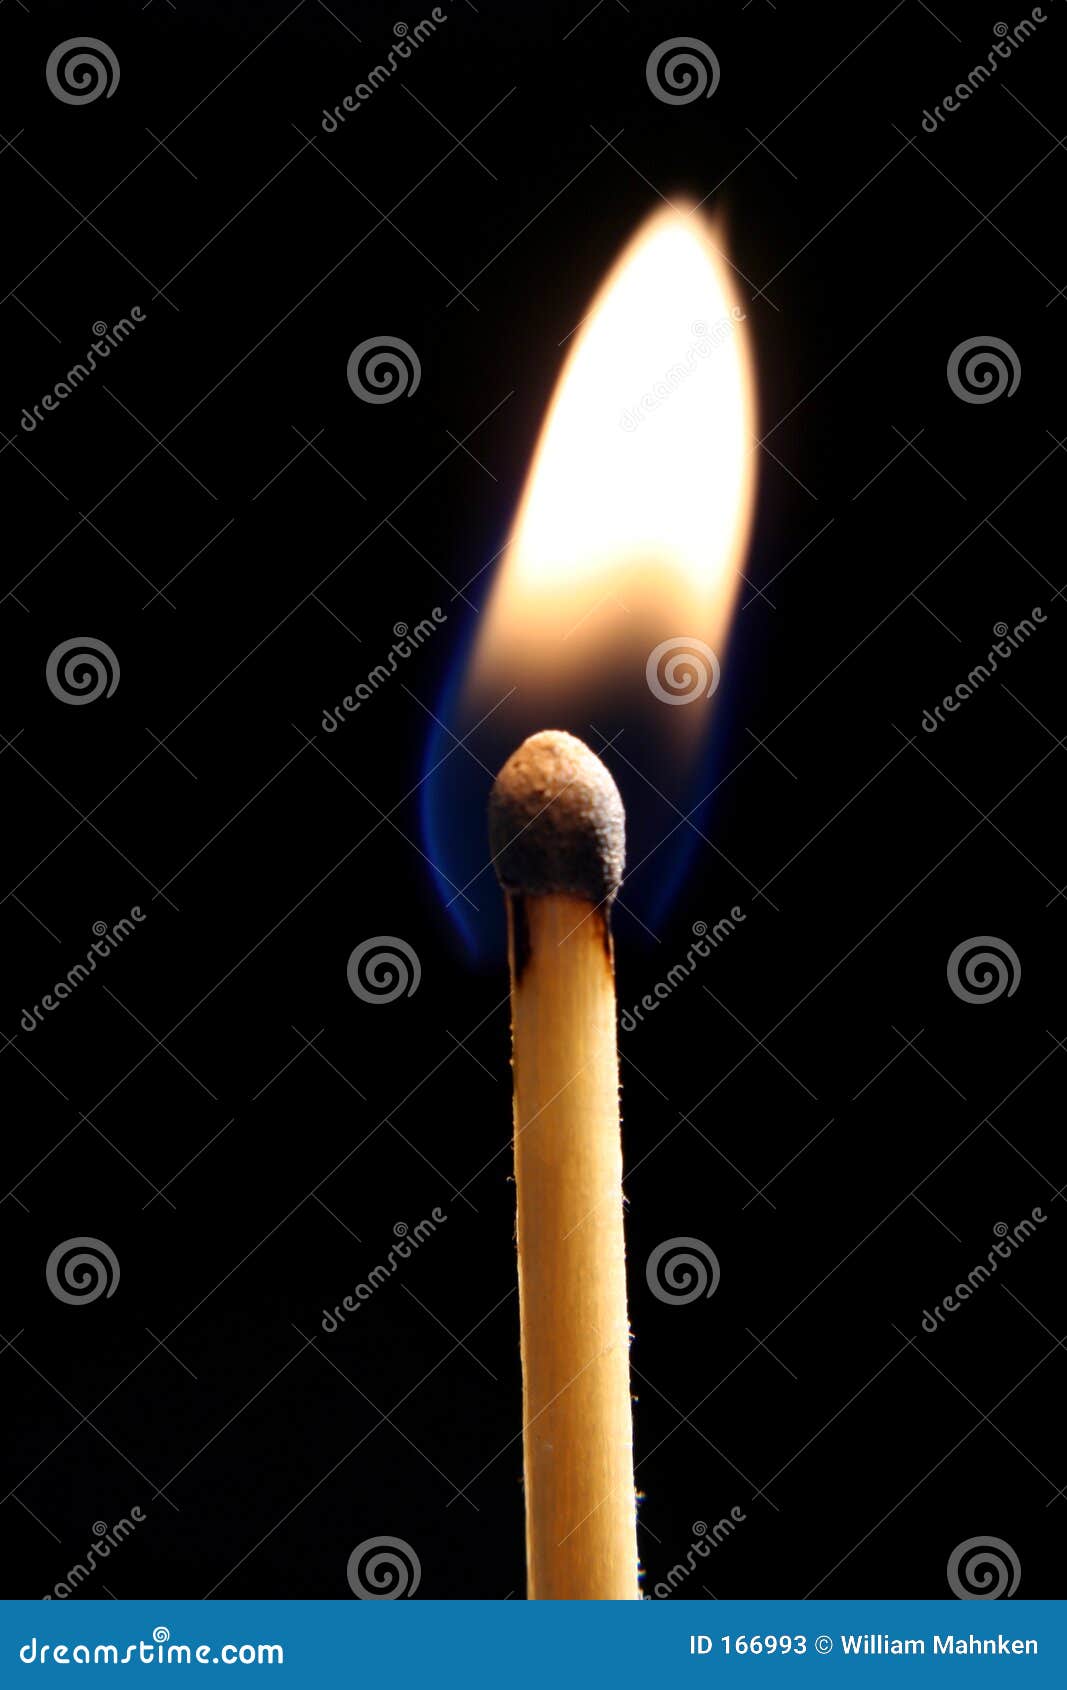 lit matchstick